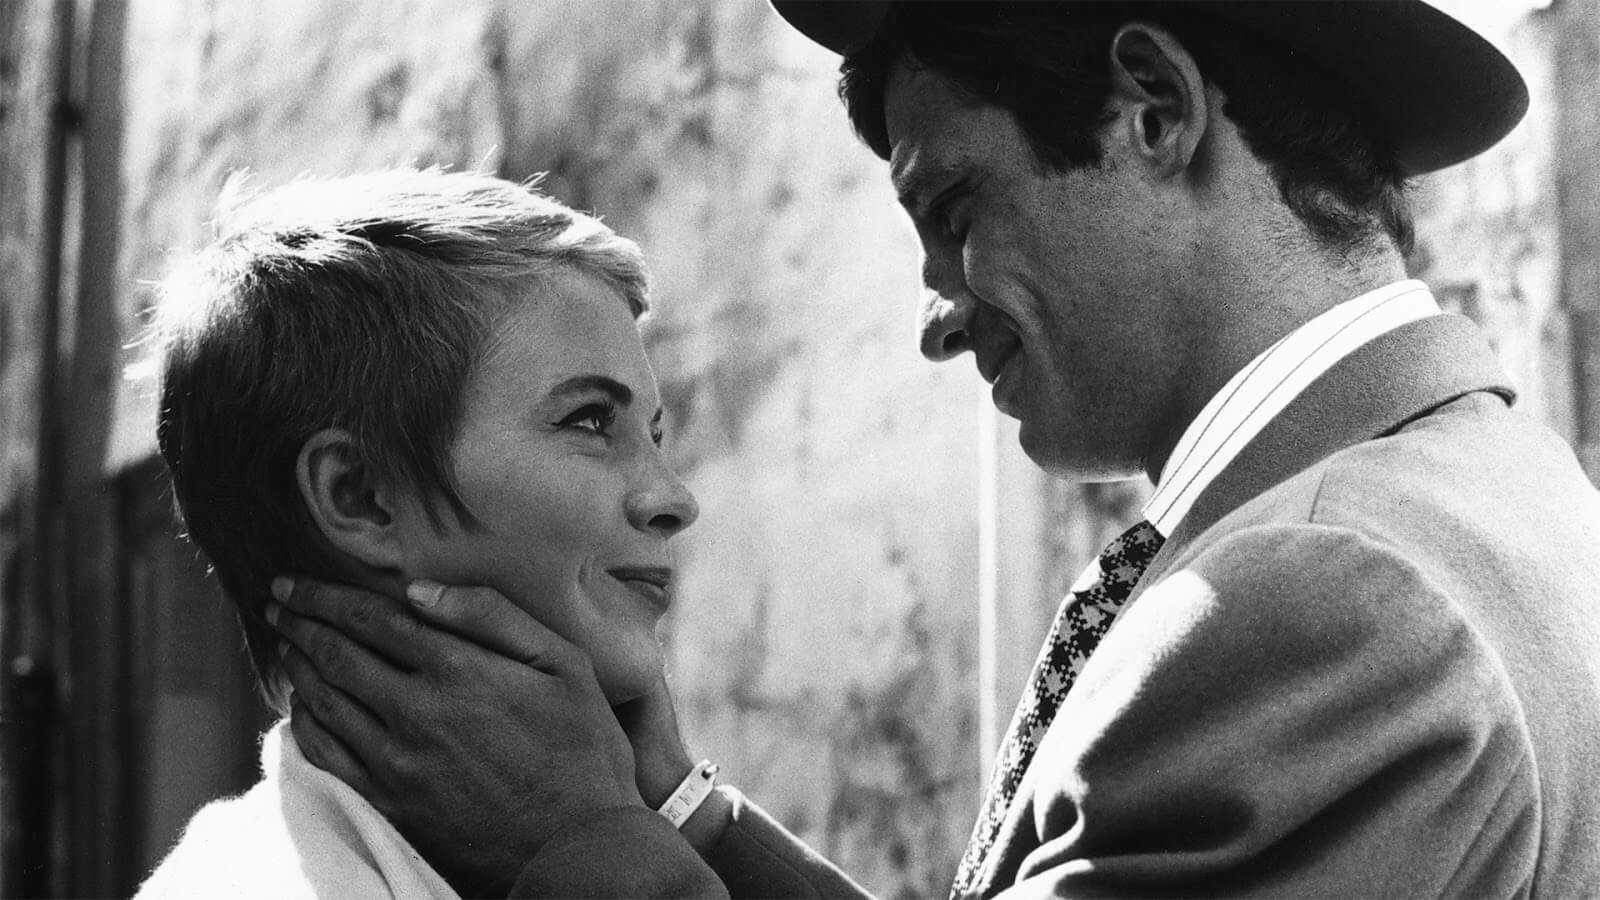 Morre Jean-Luc Godard, cineasta precursor da Nouvelle Vague, aos 91 anos